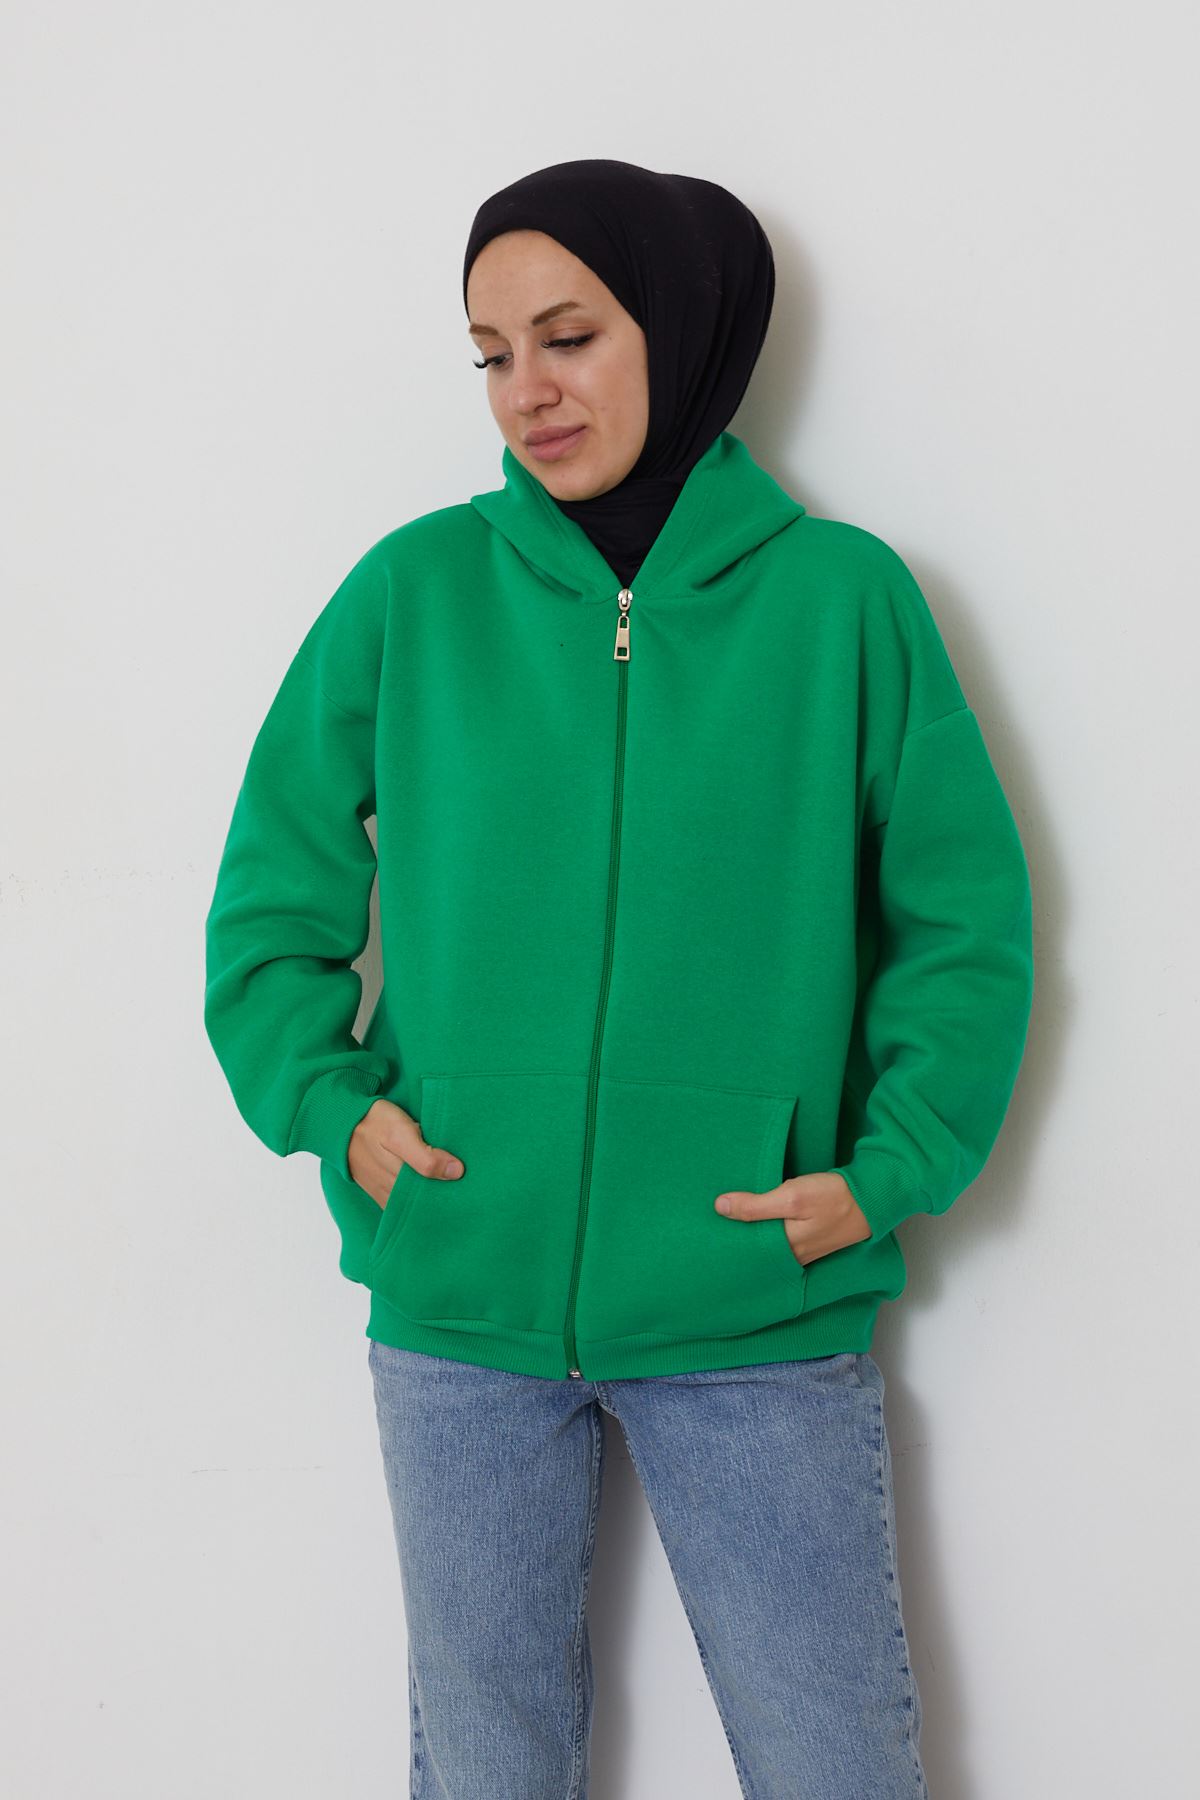 Ön Fermuarlı Kapşonlu Sweatshirt Hırka-Yeşil